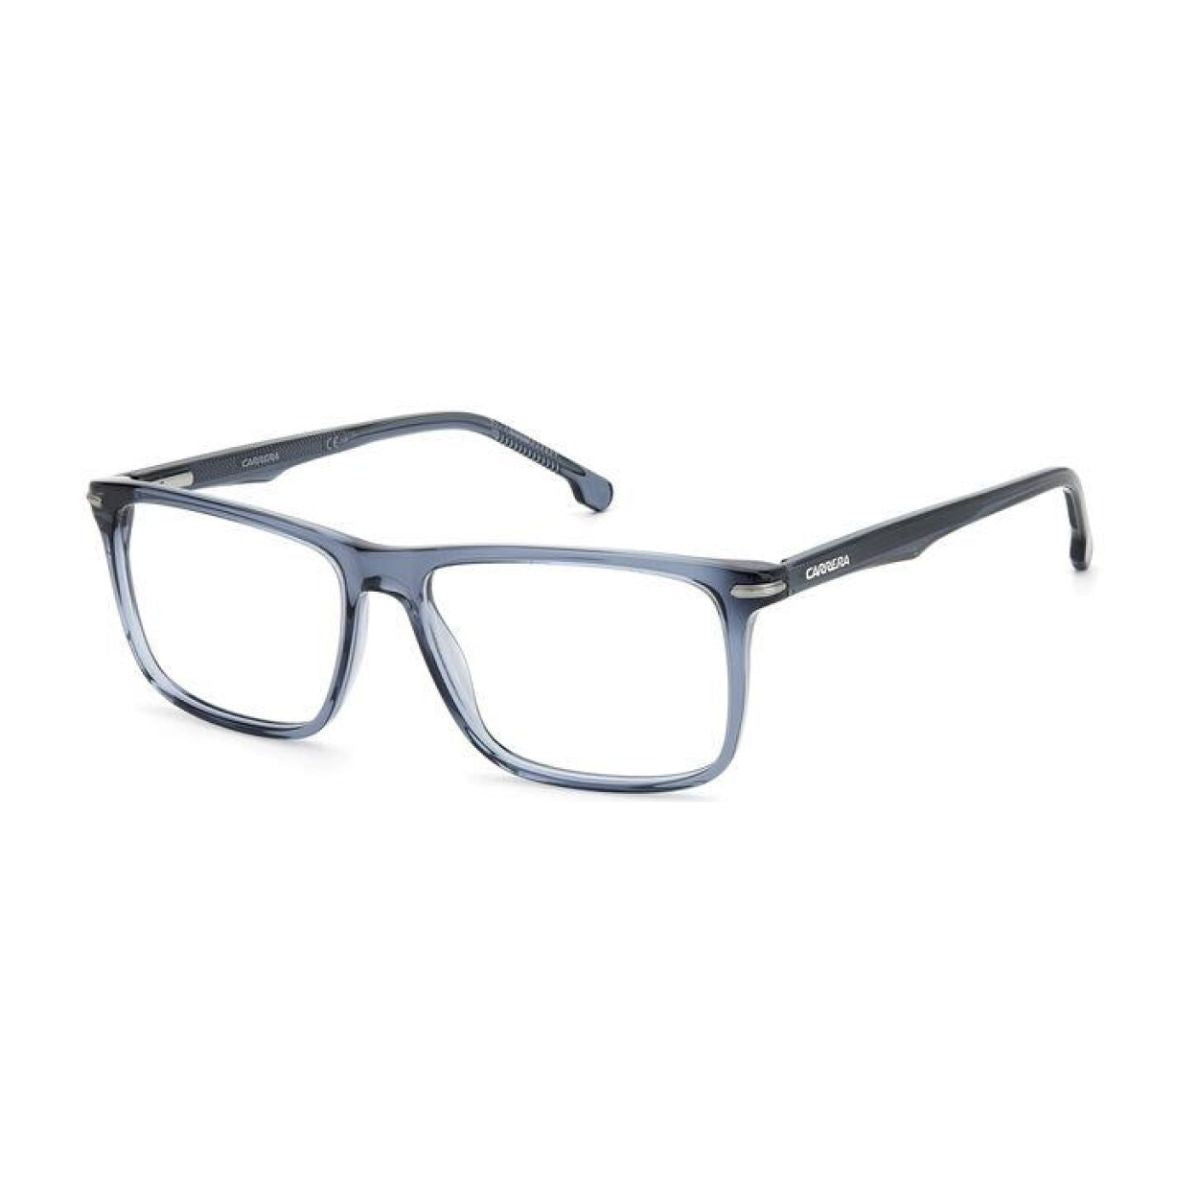 "shop Carrera 286 PJP optical eyewear frame for men's at optorium"